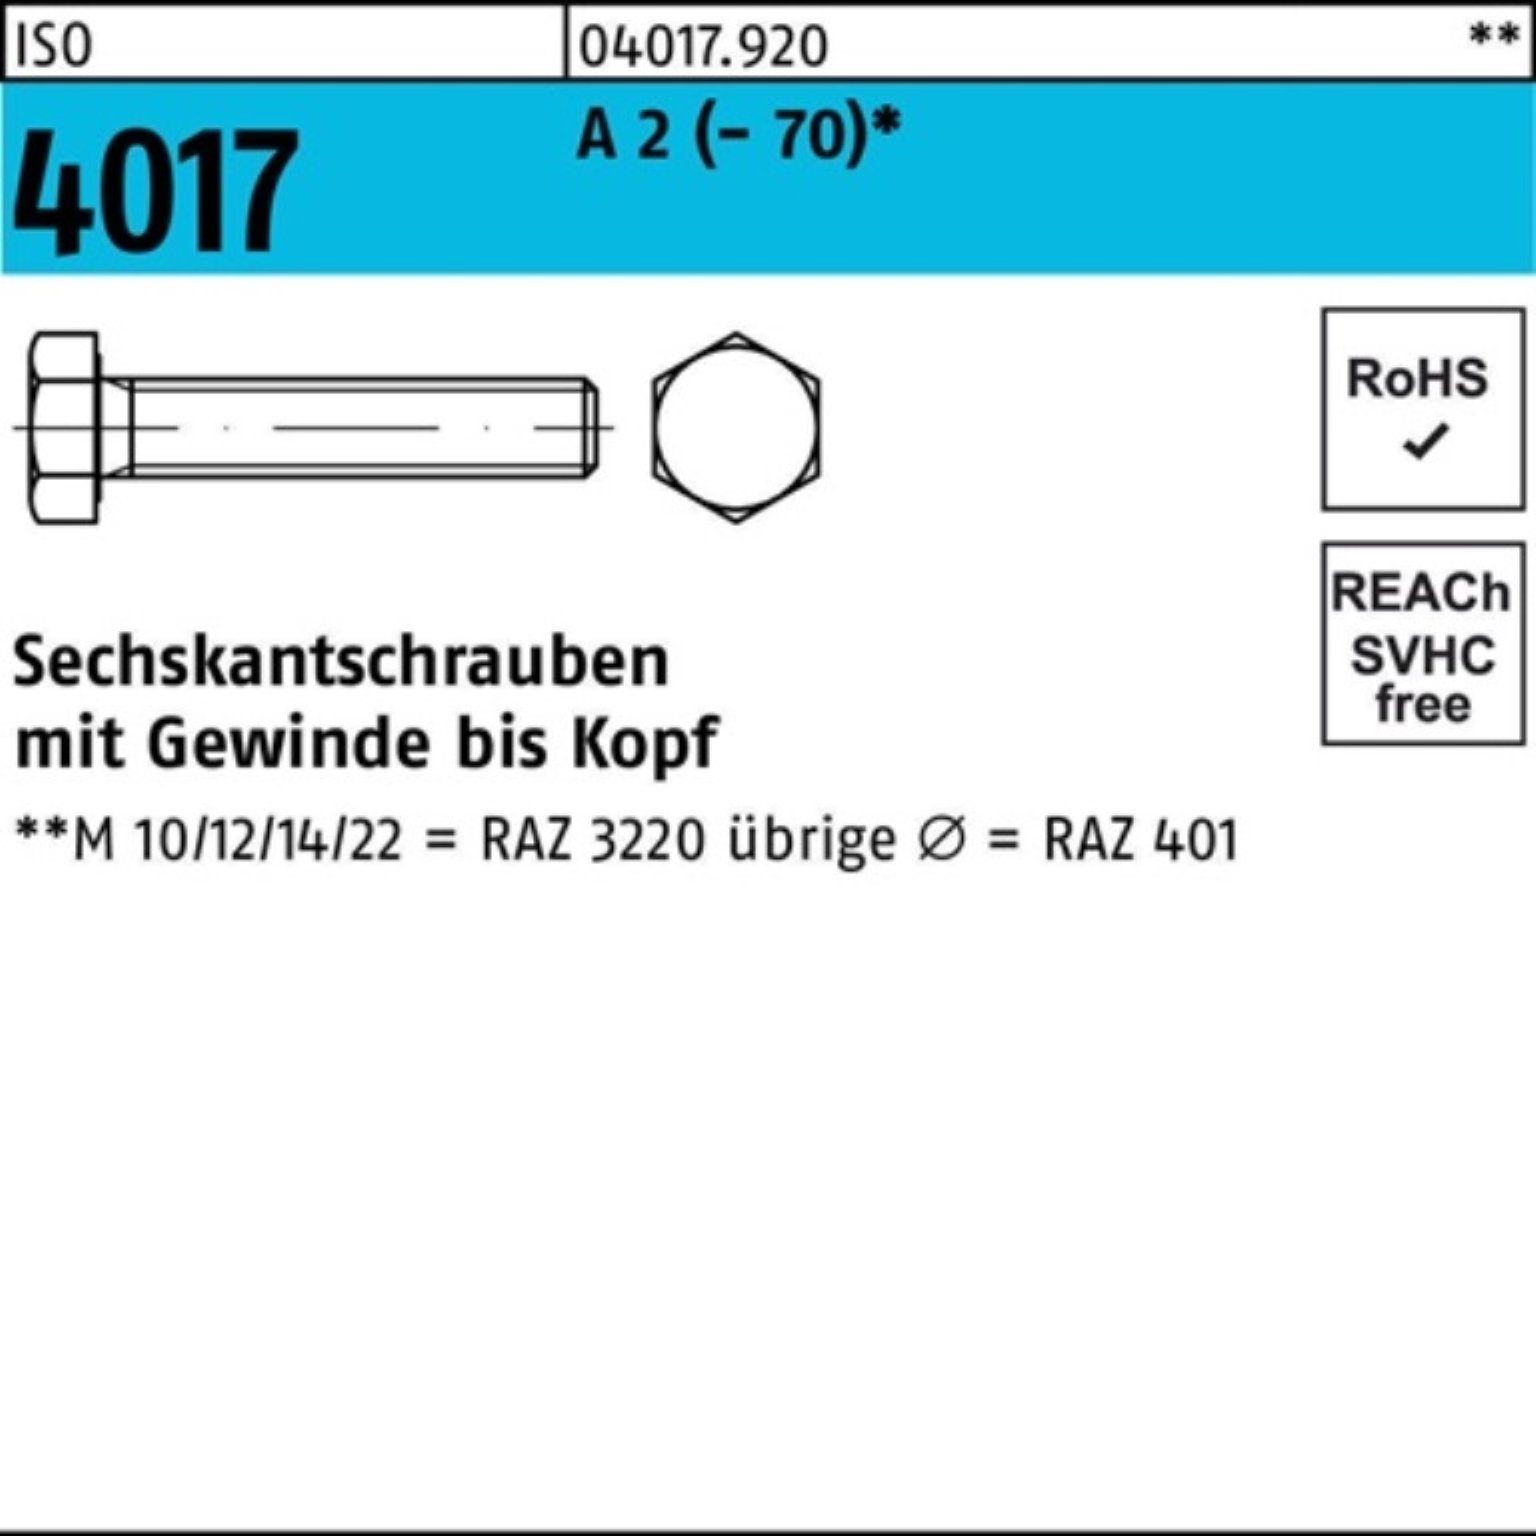 Bufab Sechskantschraube 100er Pack Sechskantschraube ISO 4017 VG M33x 150 A 2 (70) 1 Stück